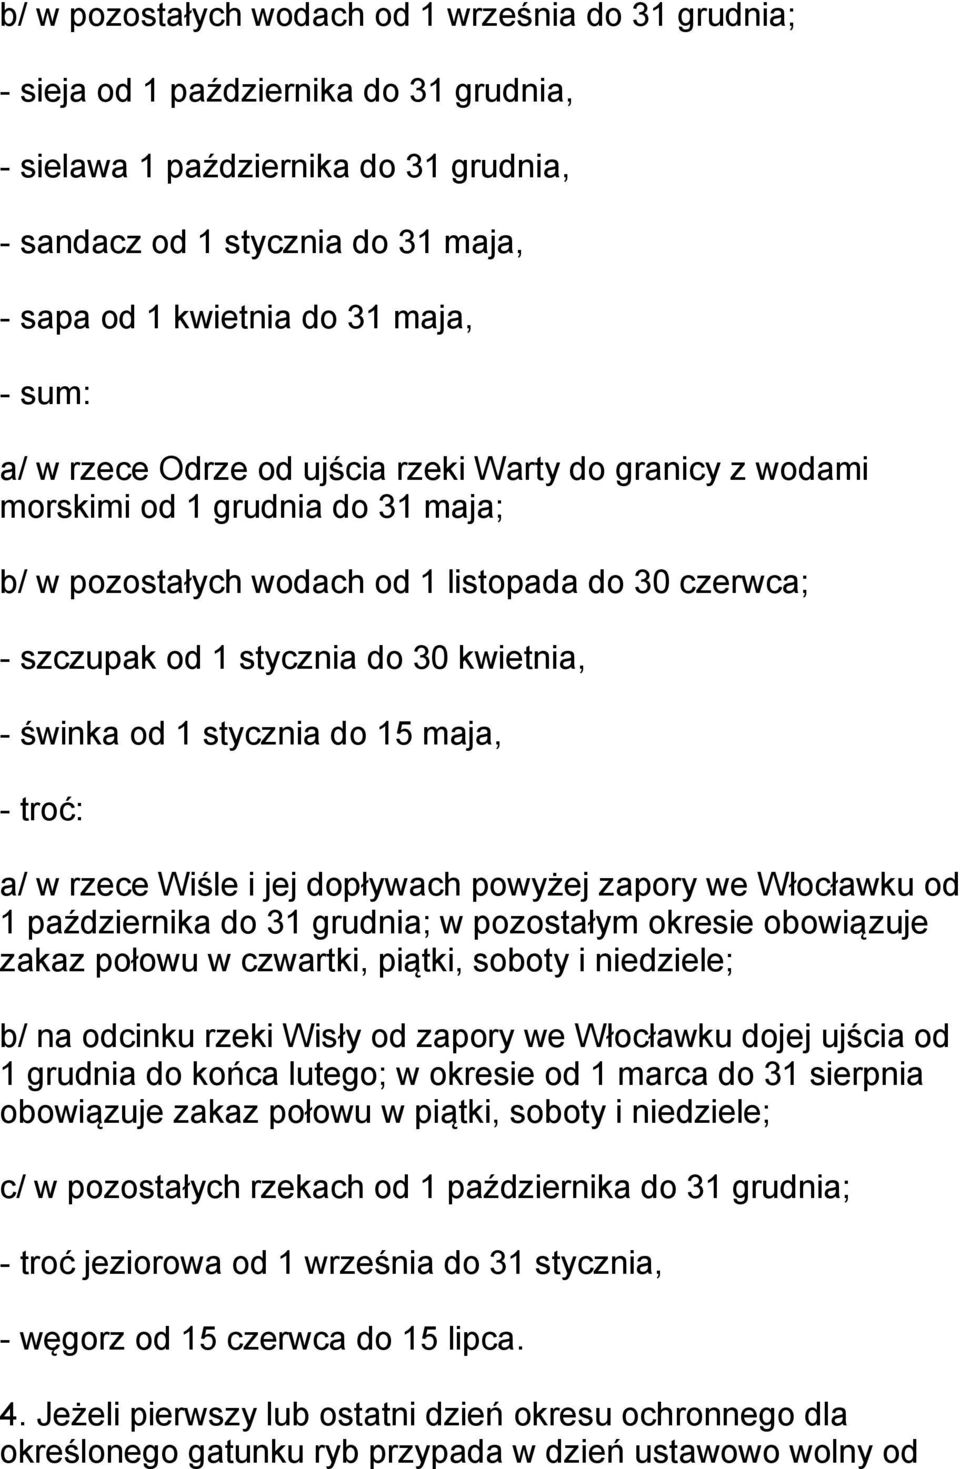 kwietnia, - świnka od 1 stycznia do 15 maja, - troć: a/ w rzece Wiśle i jej dopływach powyżej zapory we Włocławku od 1 października do 31 grudnia; w pozostałym okresie obowiązuje zakaz połowu w